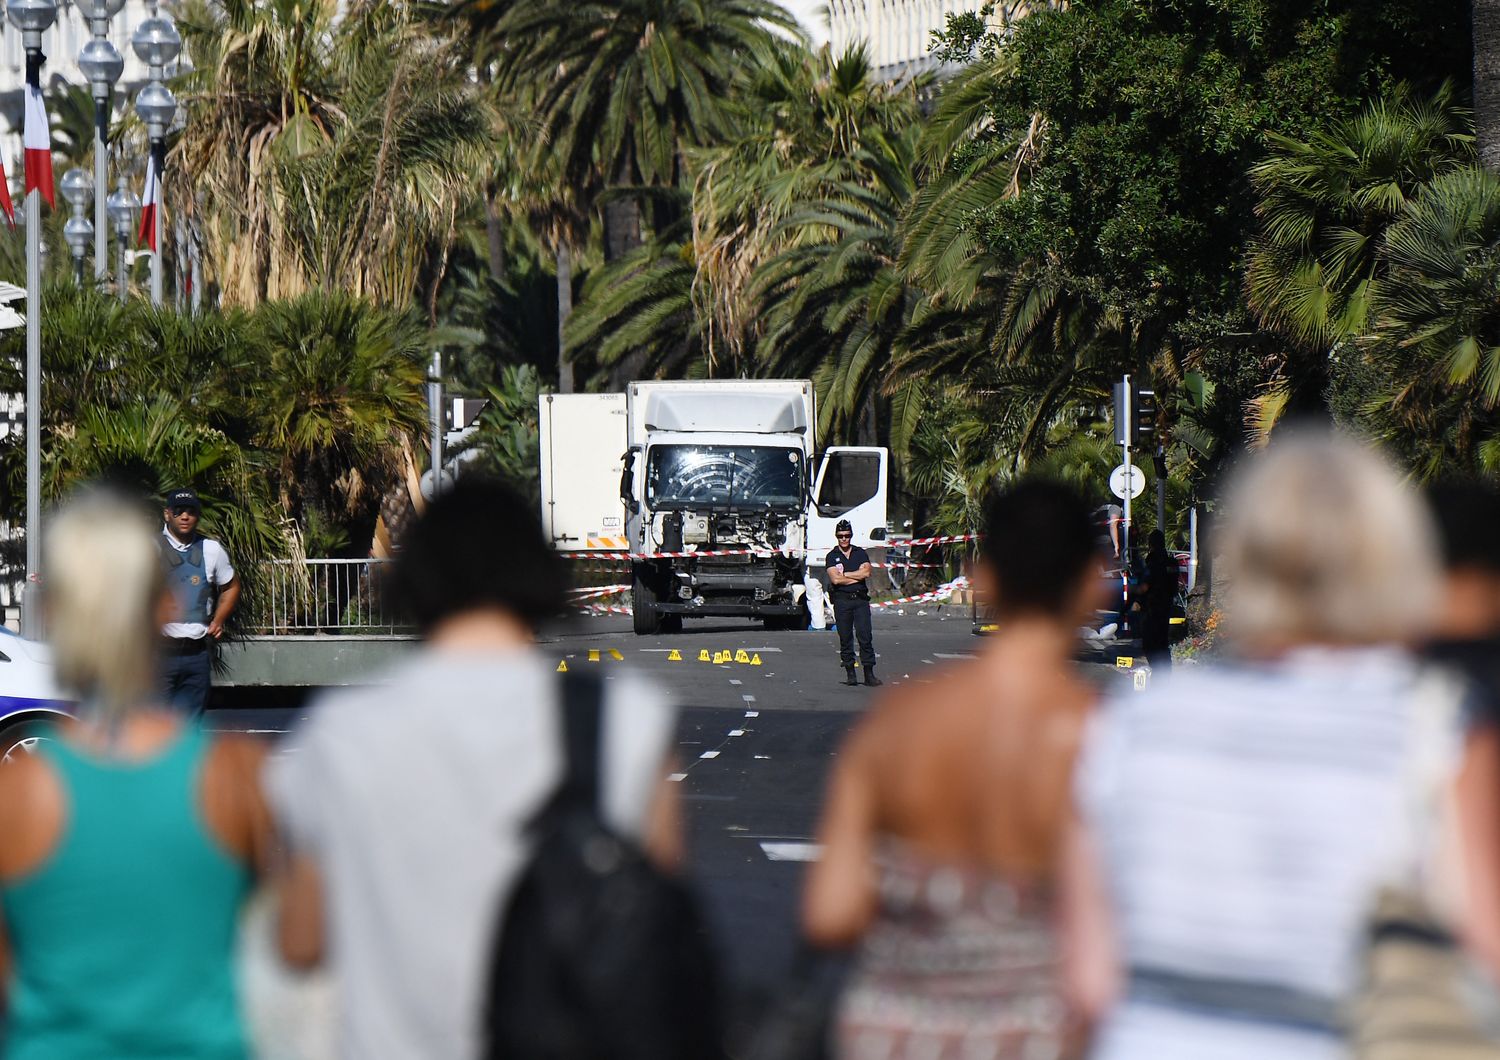 Il lungomare della Promenade des Anglais, a Nizza, poche ore dopo l'attentato